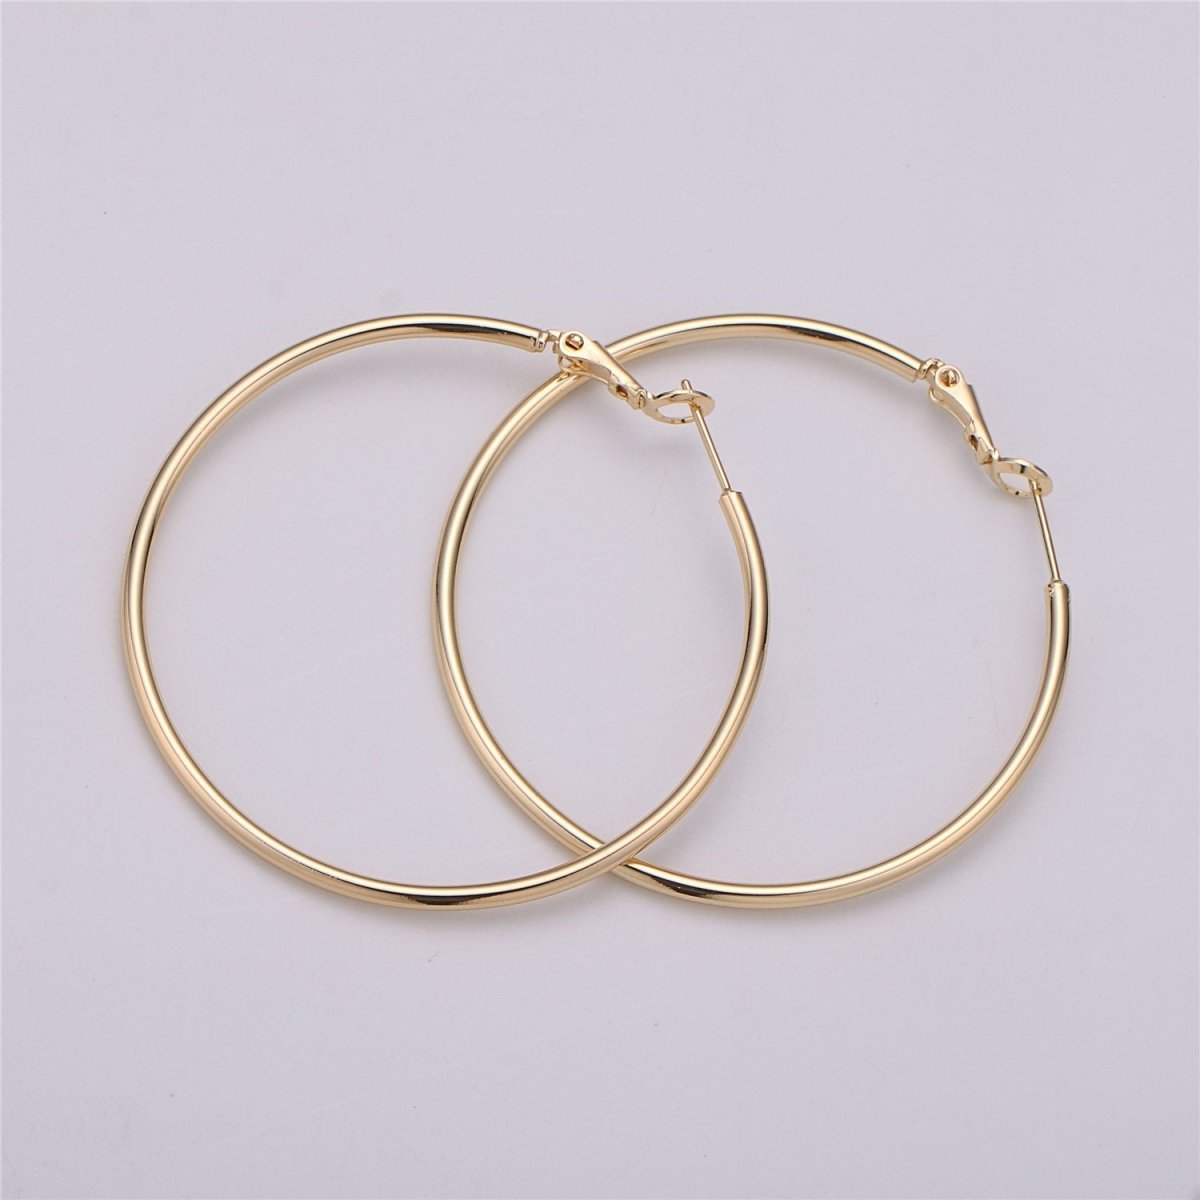 50mm 55mm Gold filled Hoops Earrings w/Clutch, 14k Gold-Filled Findings 1  Pair 1mm Gold Filled Hoops, Hoop Earrings Q-478 to Q-480